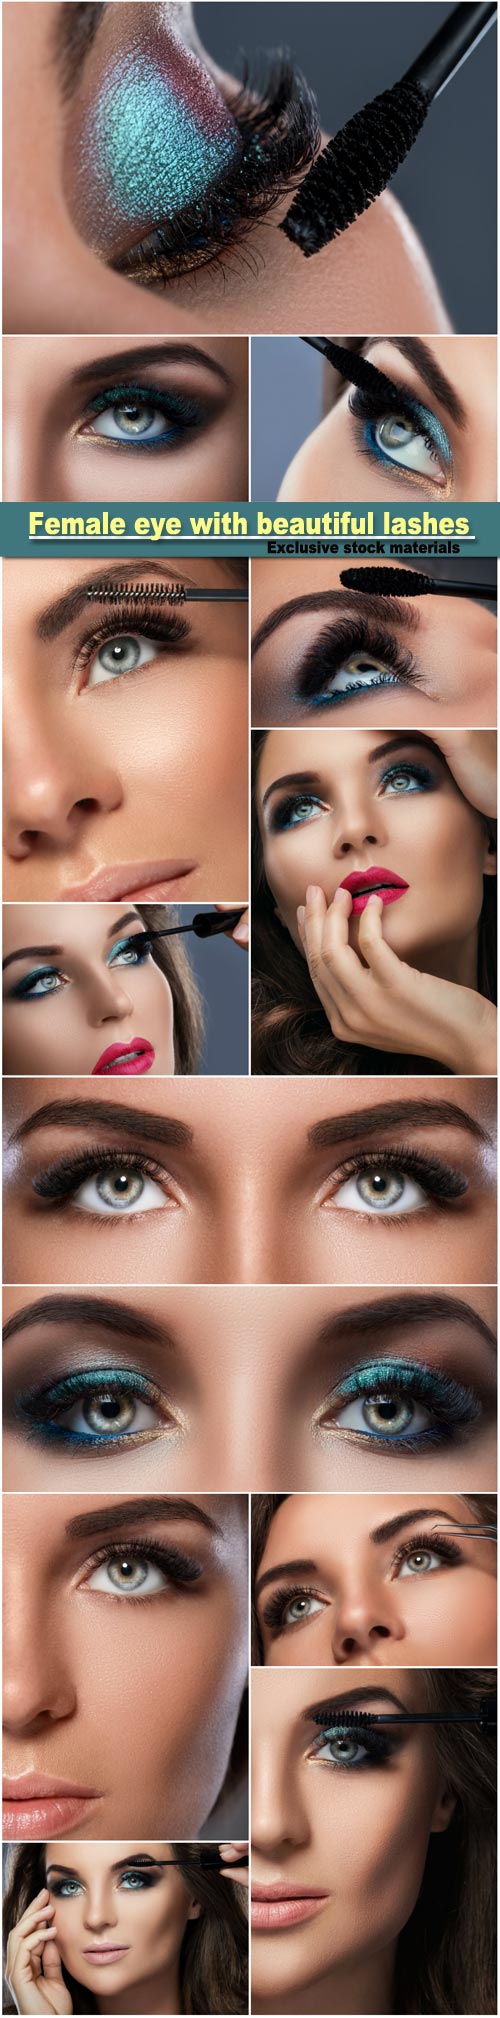 Female eye with beautiful long lashes, make-up